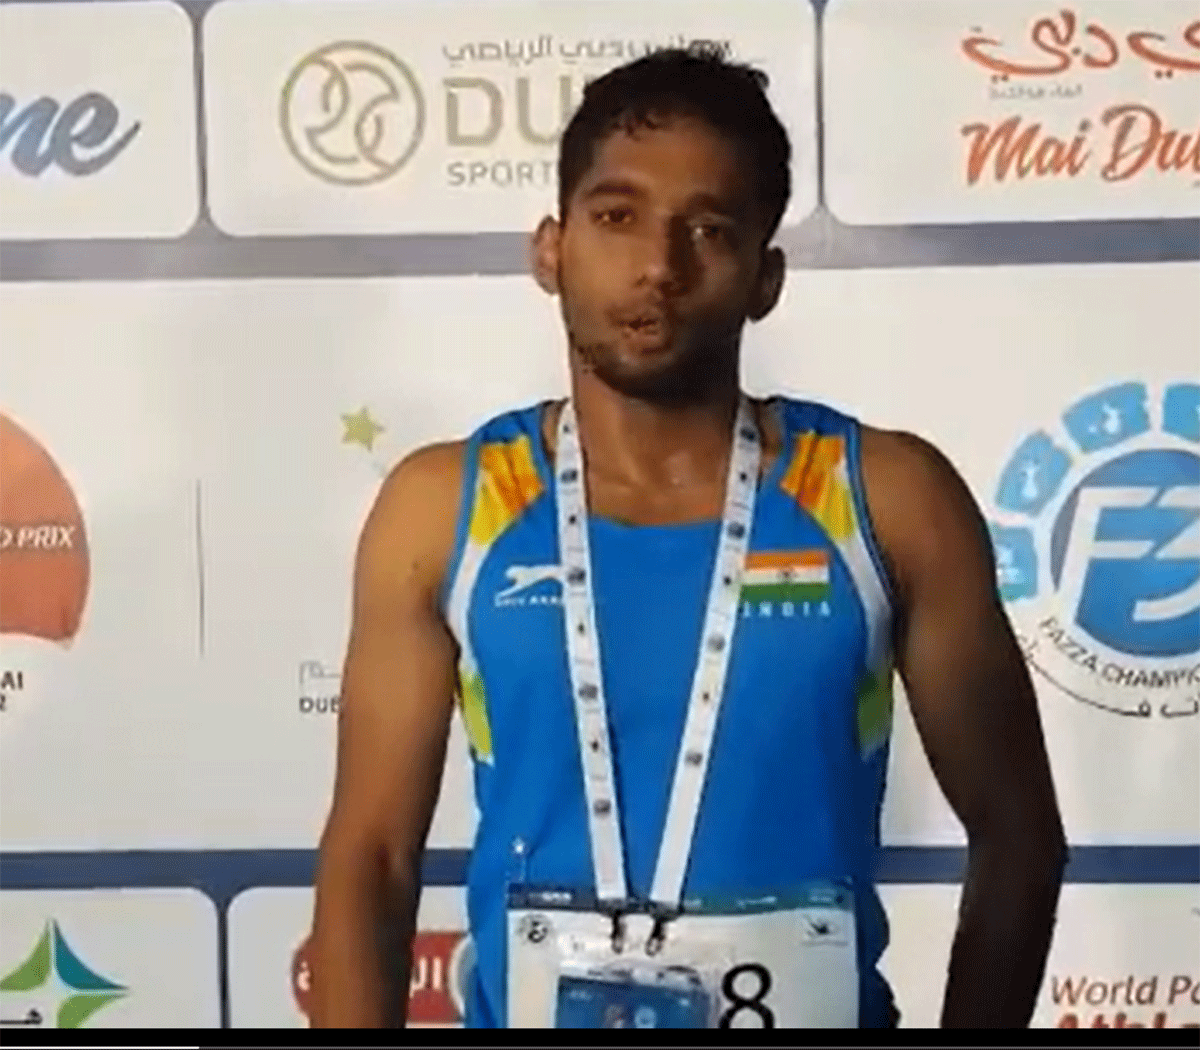 Pranav Prashant Desai won gold at the World Para Athletics Grand Prix in Dubai in the 200m T24 event